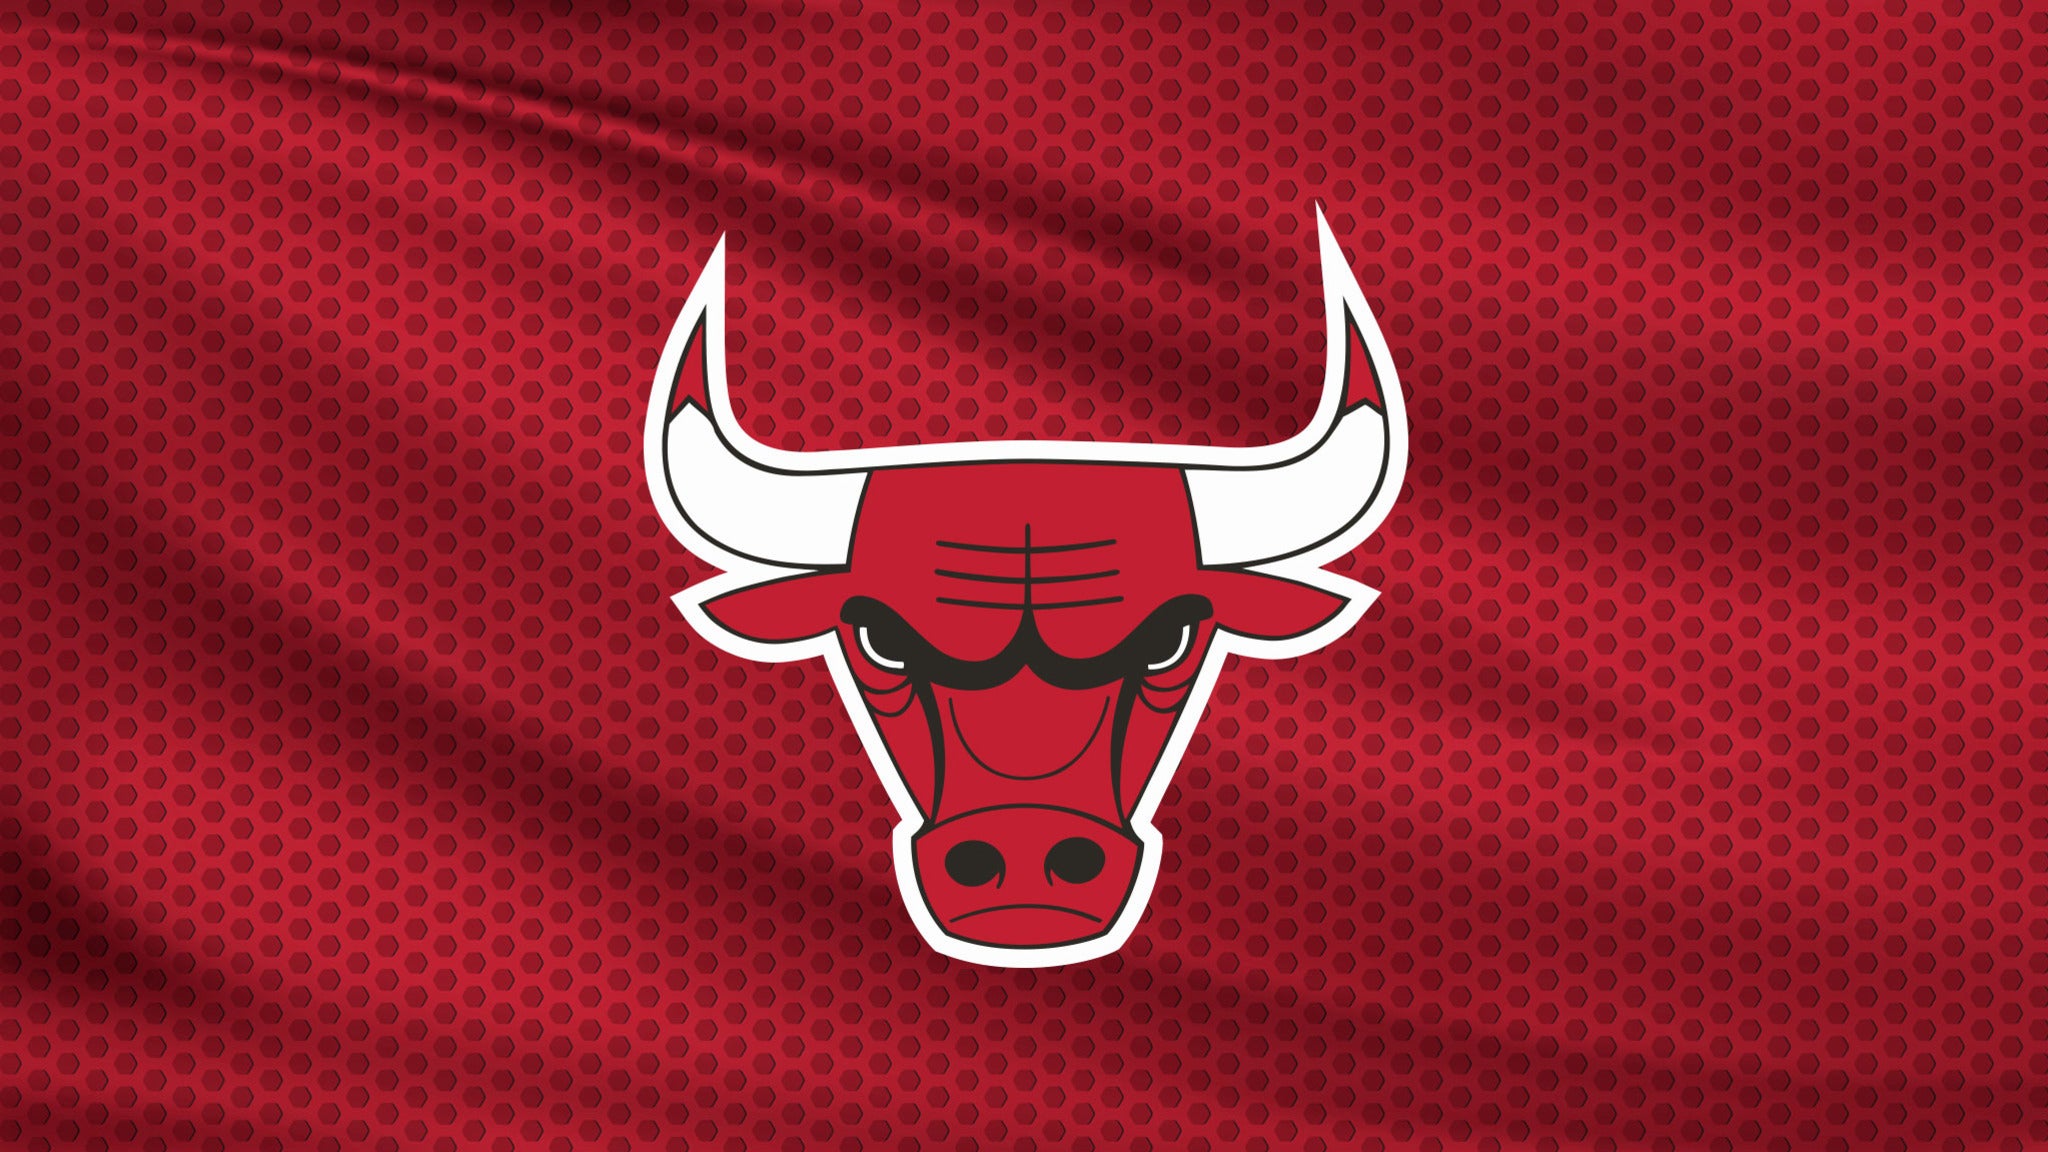 Chicago Bulls vs. Sacramento Kings